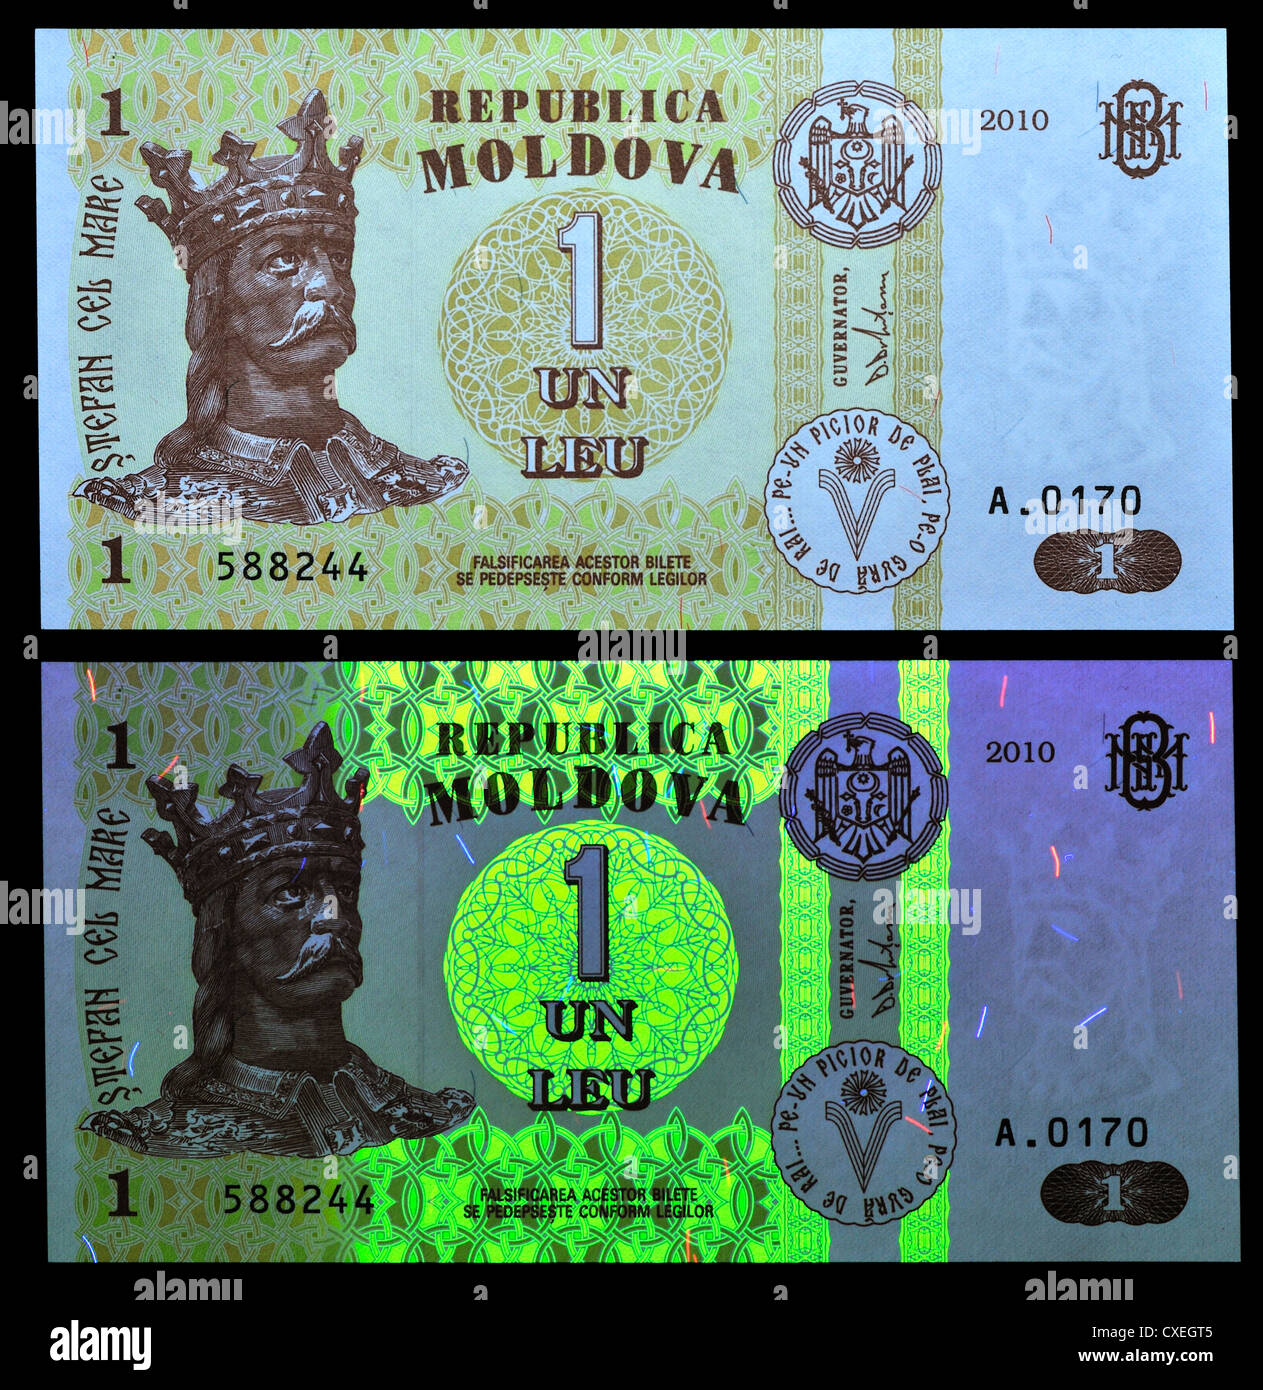 Vu des billets avec la lumière naturelle et la lumière UV, montrant les fonctions de sécurité. Un Leu remarque , Moldova, 2010 Banque D'Images